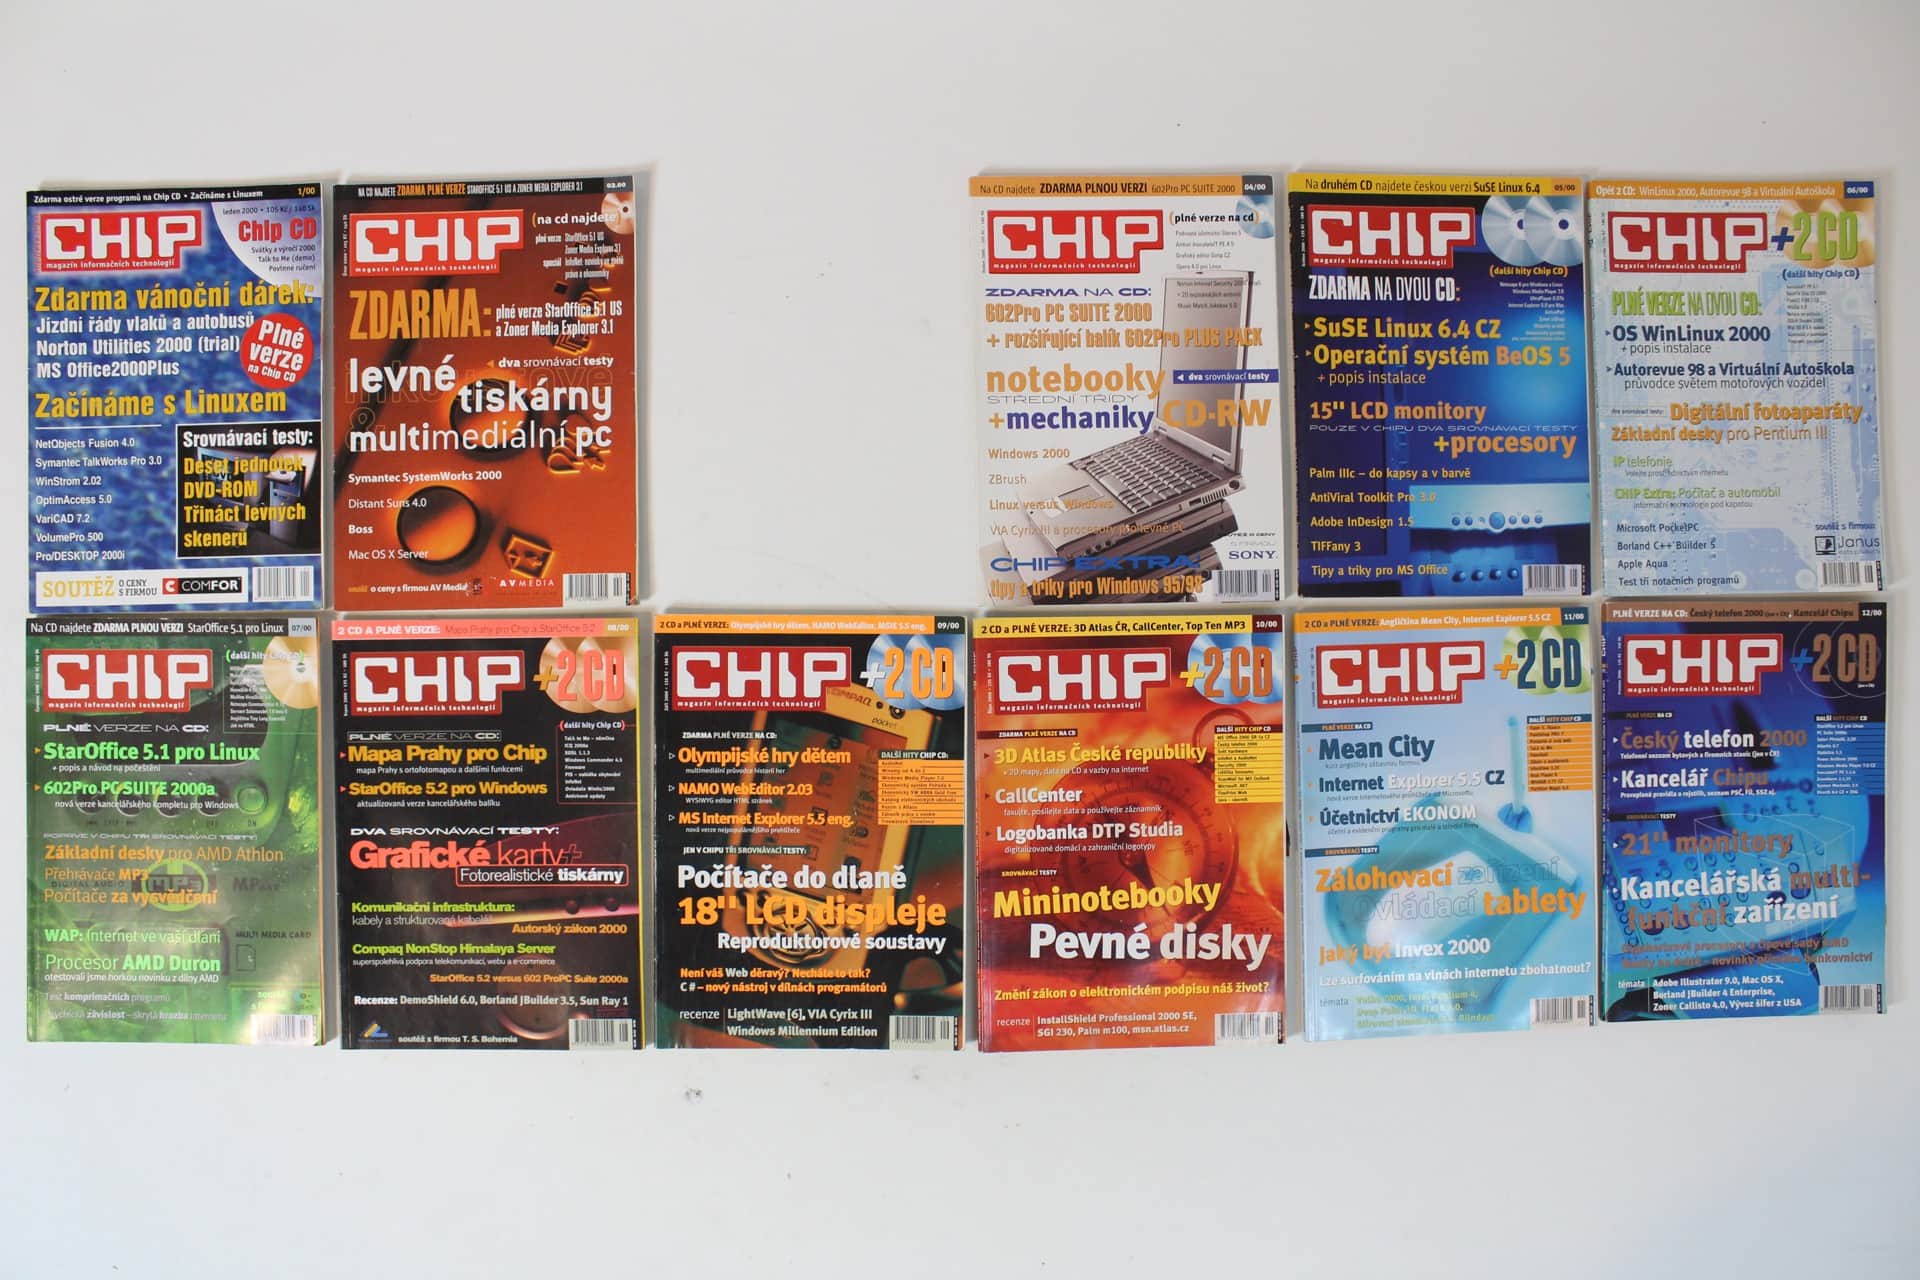 Chip 2000